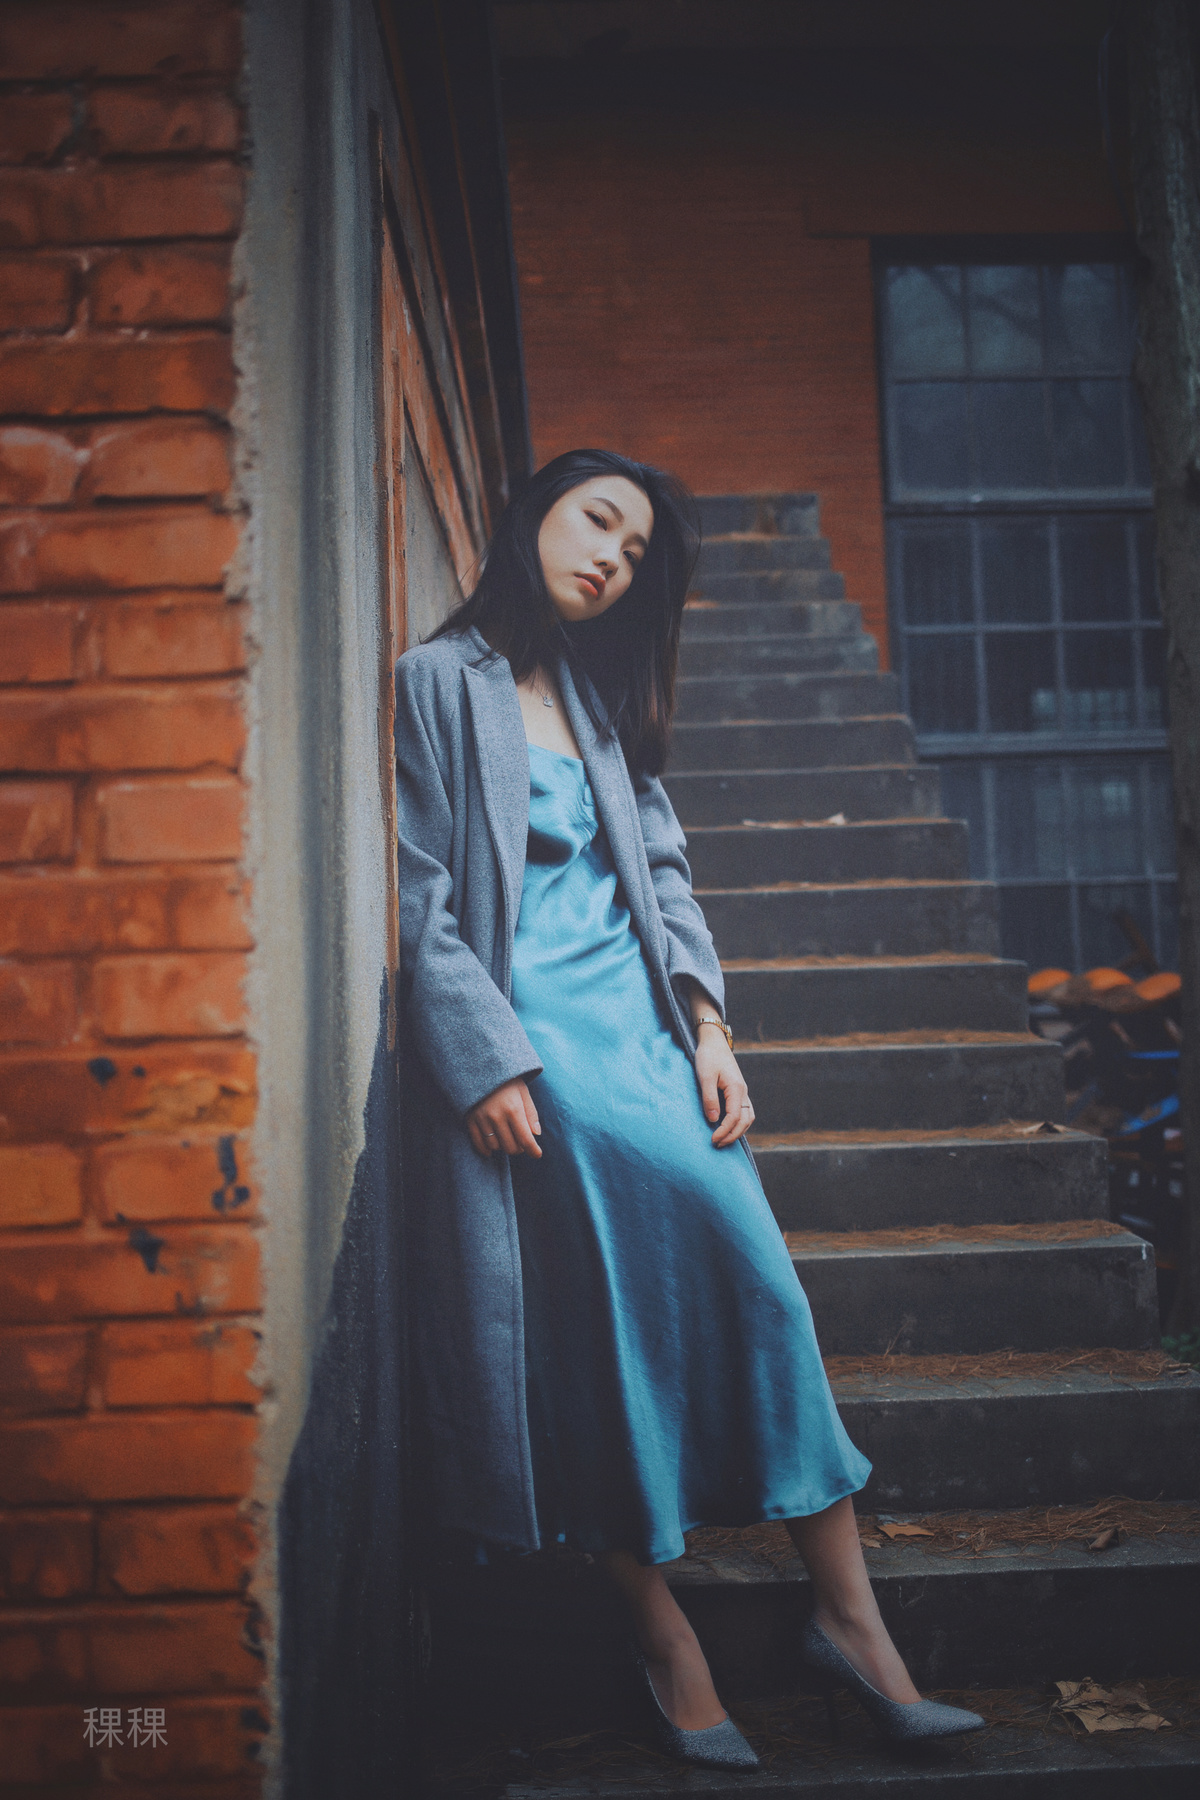 一个穿着蓝色连衣裙和外套的年轻女子坐在一所房子的台阶上